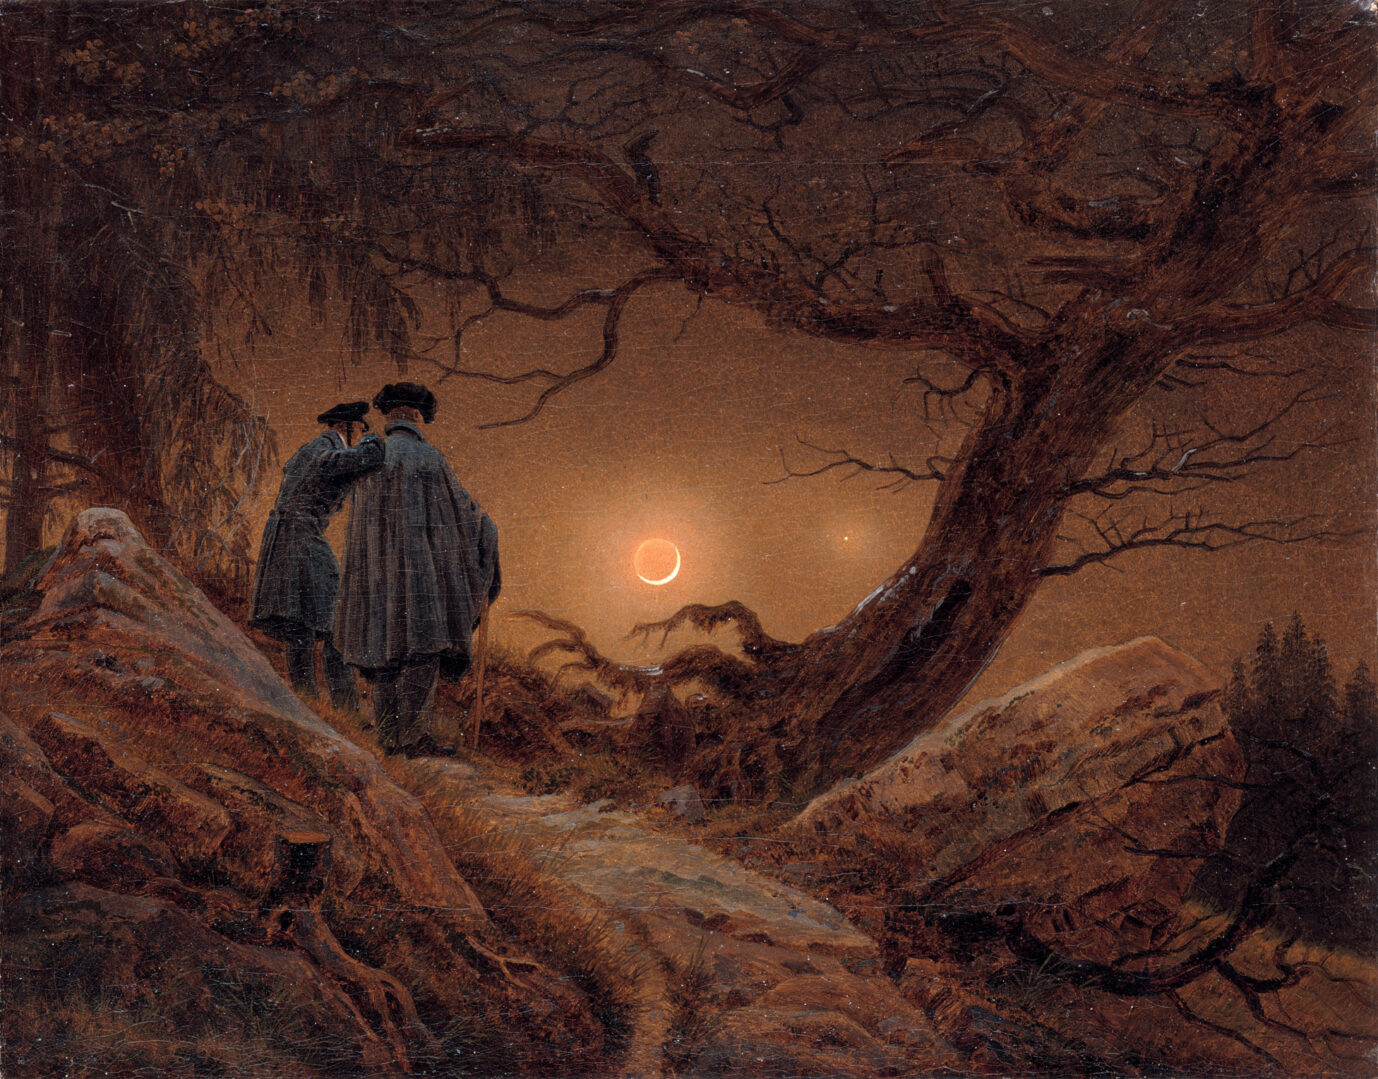 Das Bild ist ein Gemälde des bekannten Romantik-Künstlers Caspar David Friedrich. Zwei Männer in Renaissance-Kleidung blicken inmitten eines Waldes auf den Mond. Warme Farbtöne, wenig Licht. (Themenbild)